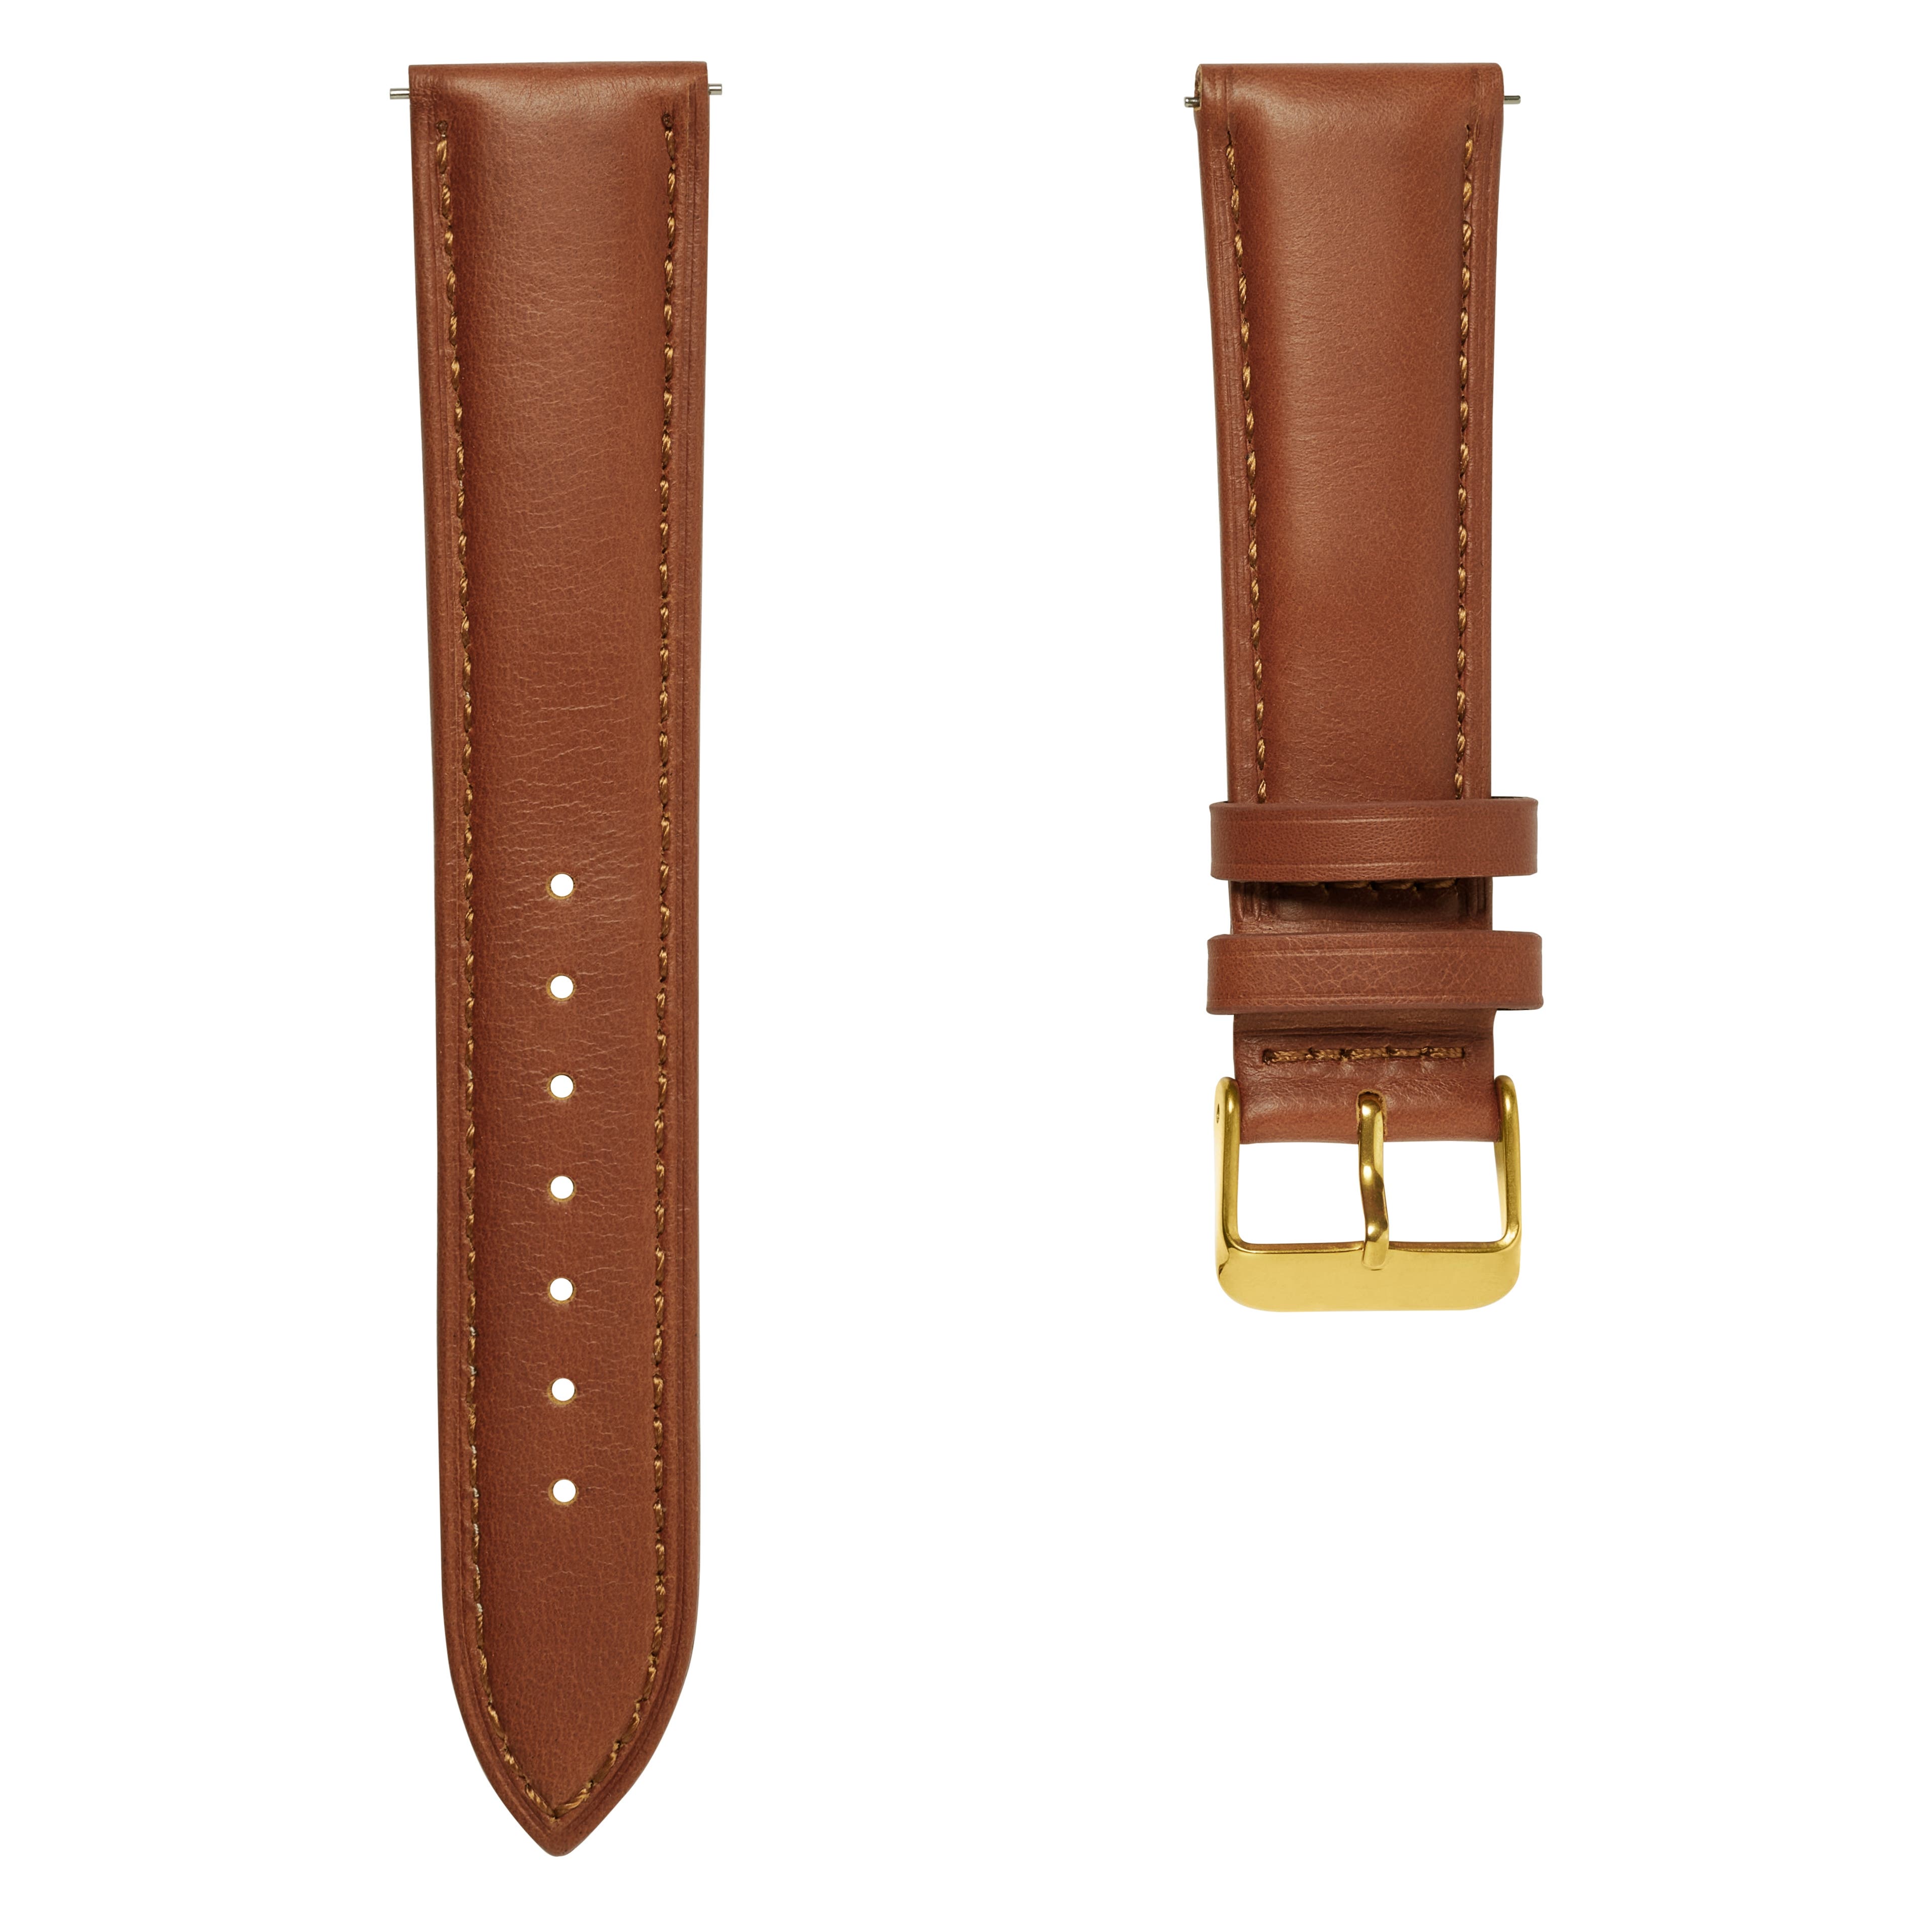 Bracelet de montre en cuir brun havane de 21 mm avec boucle dorée - Système de fixation rapide